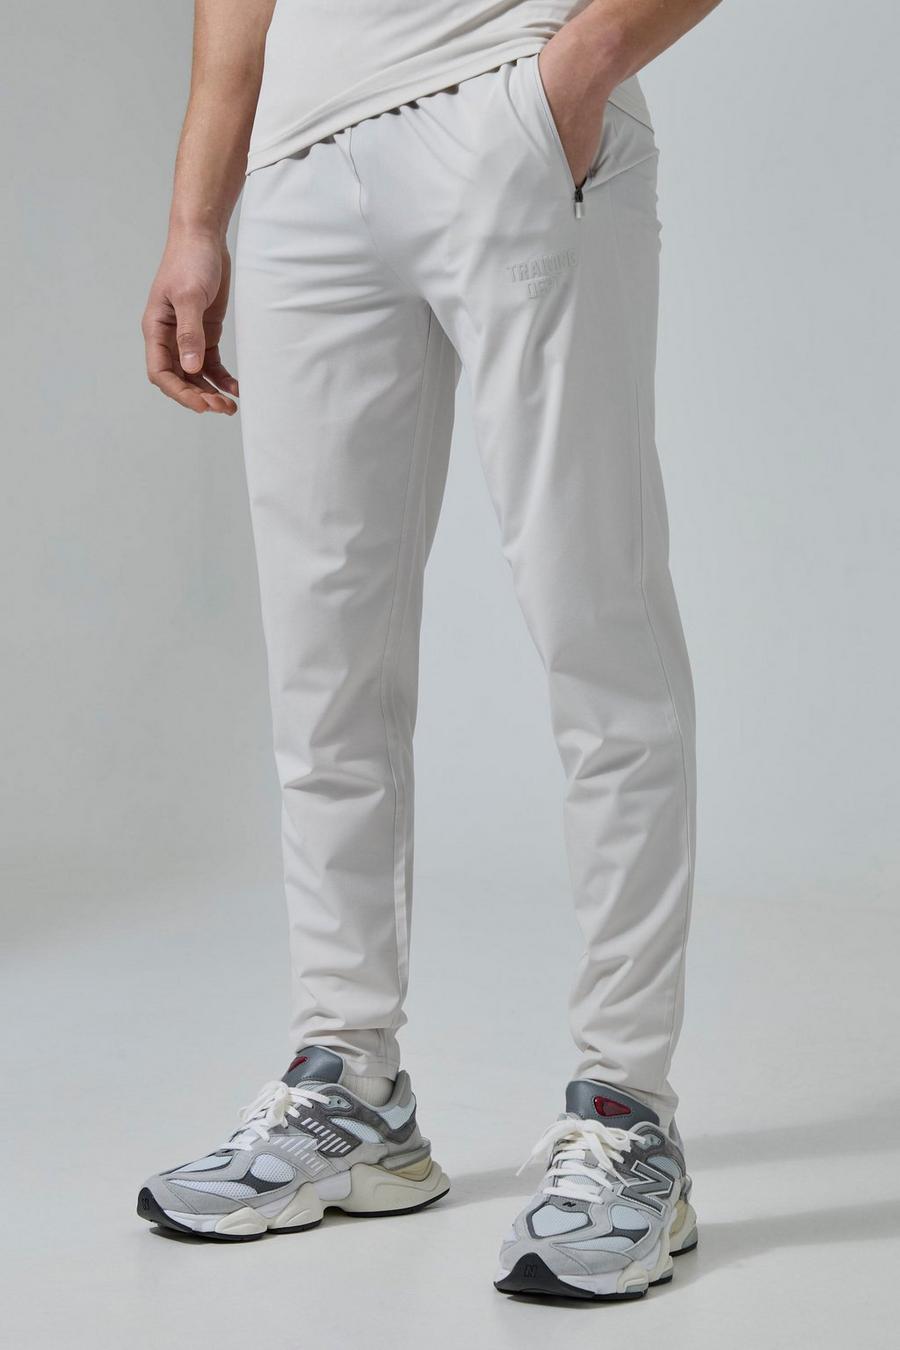 Pantalón deportivo Active de tela elástica, Light grey gris